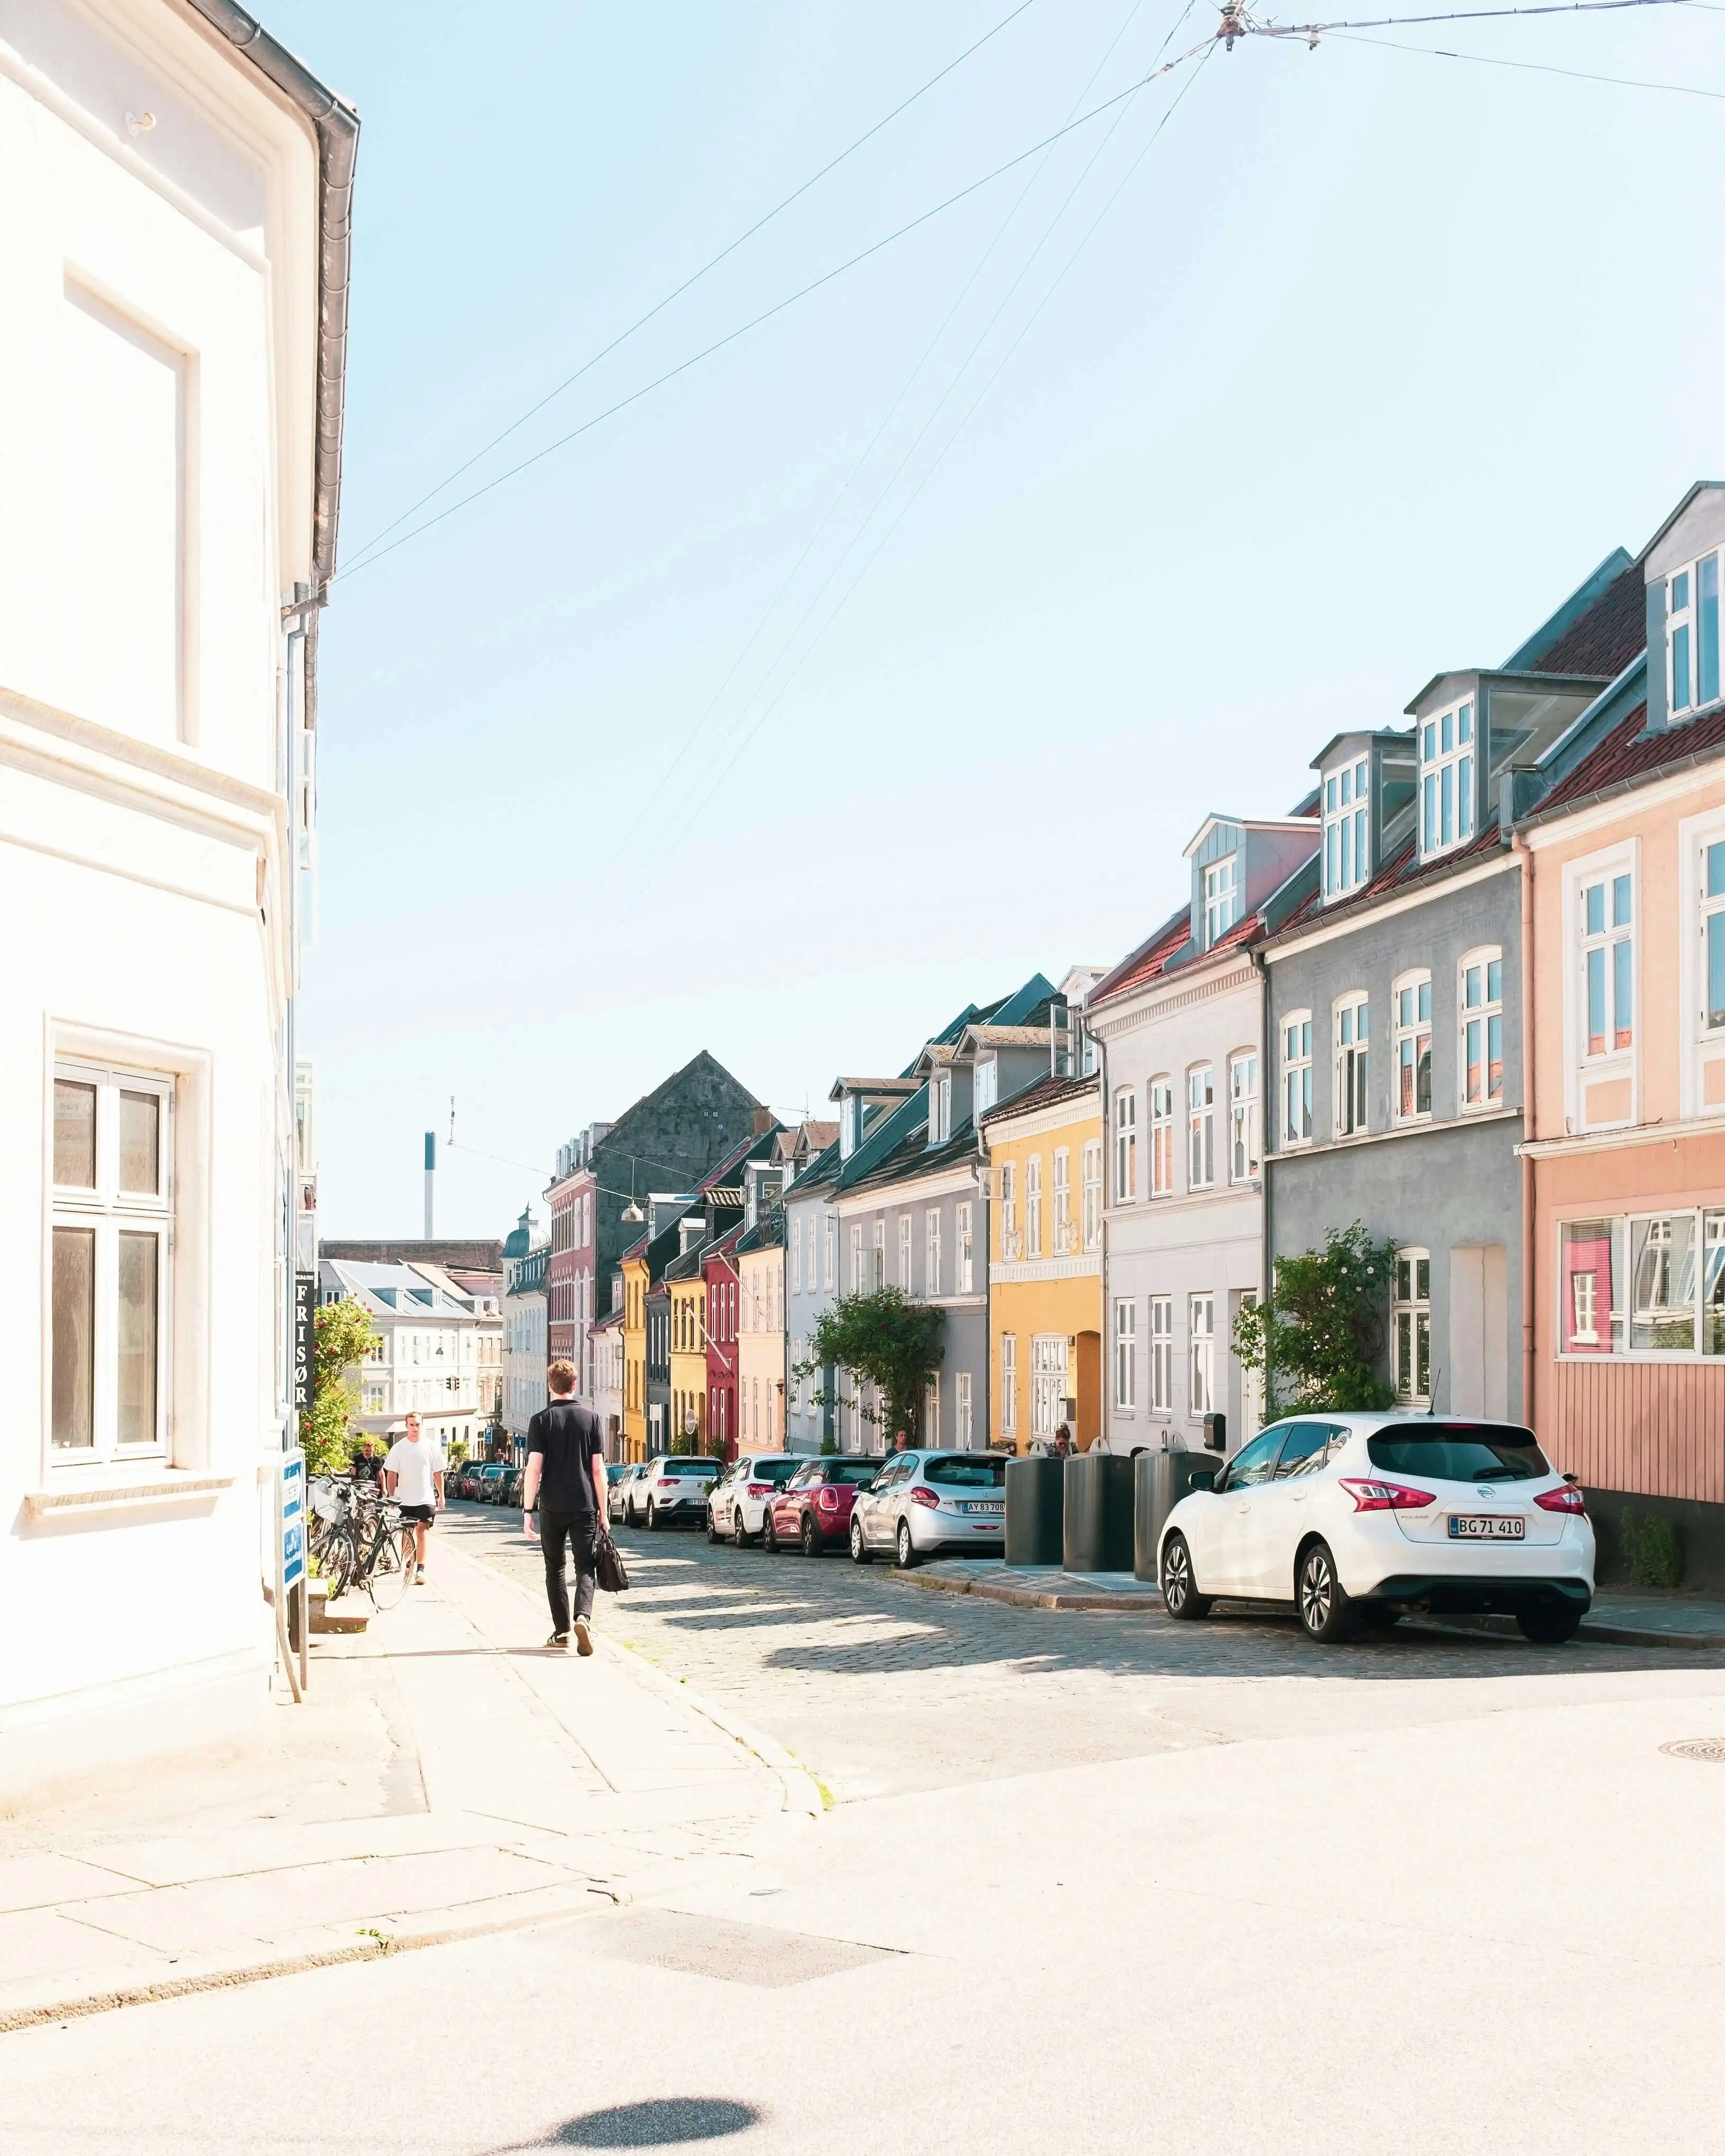 Image from Aarhus